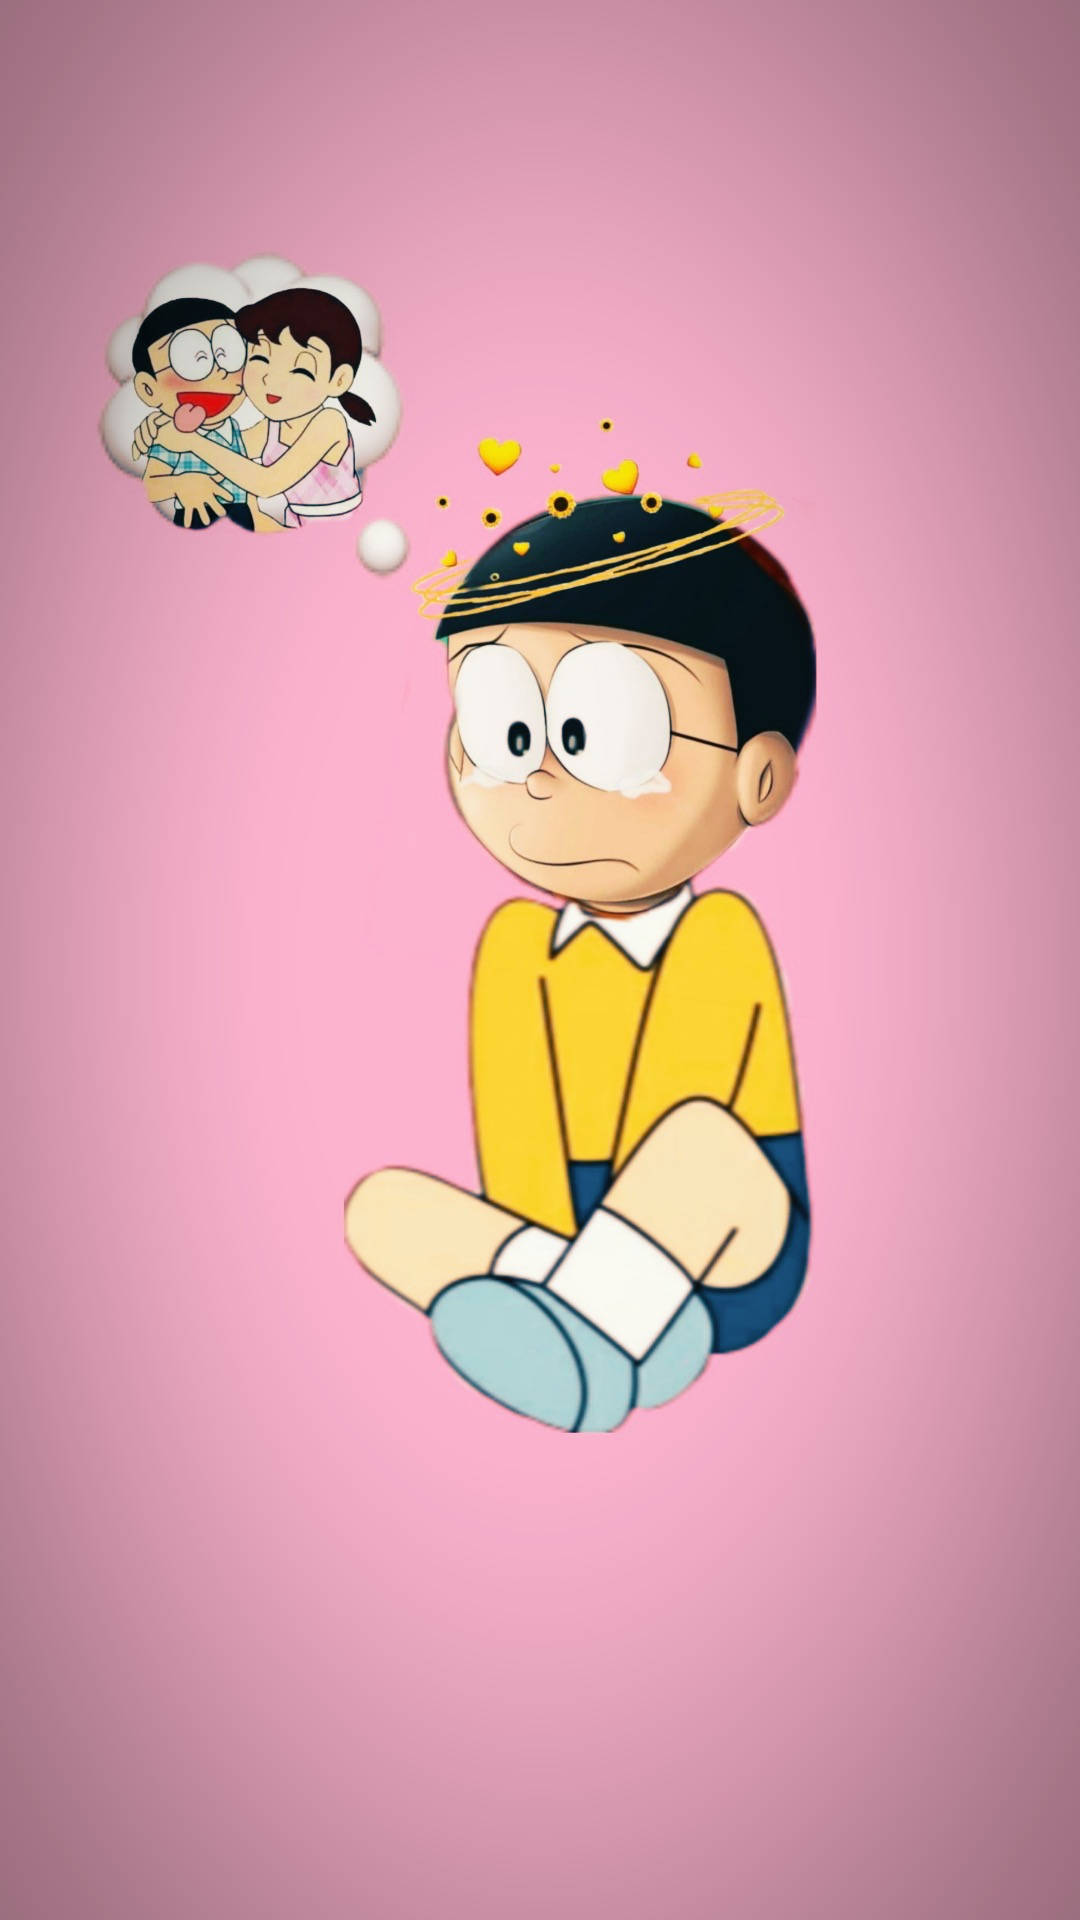 Nobita Daydreaming About Shizuka Background